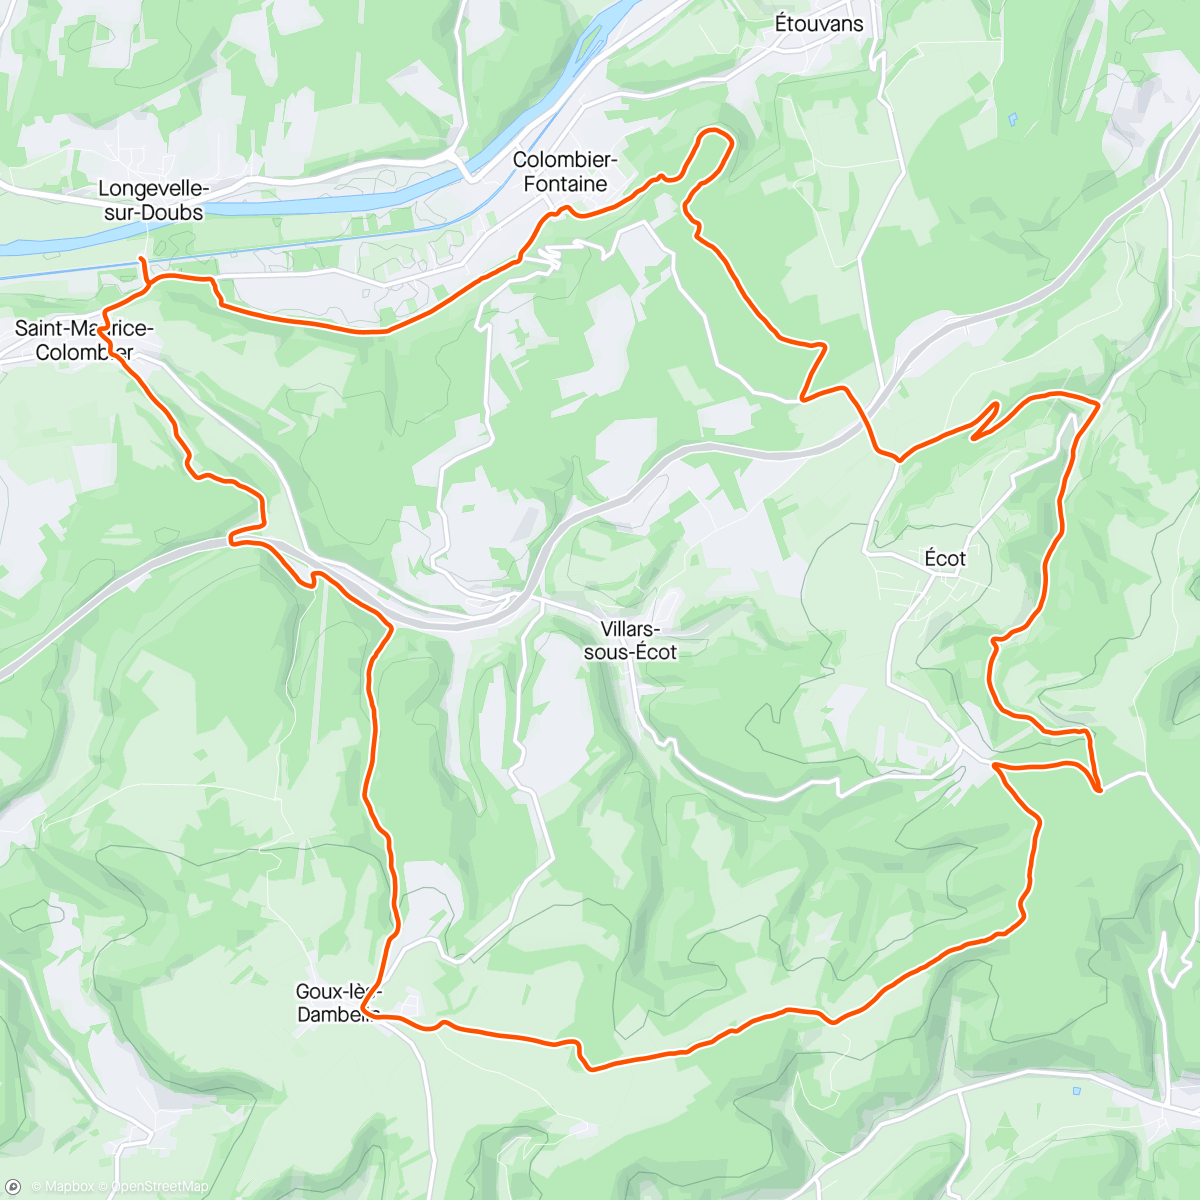 Map of the activity, Saint-Maurice-Colombier trajet aller-retour